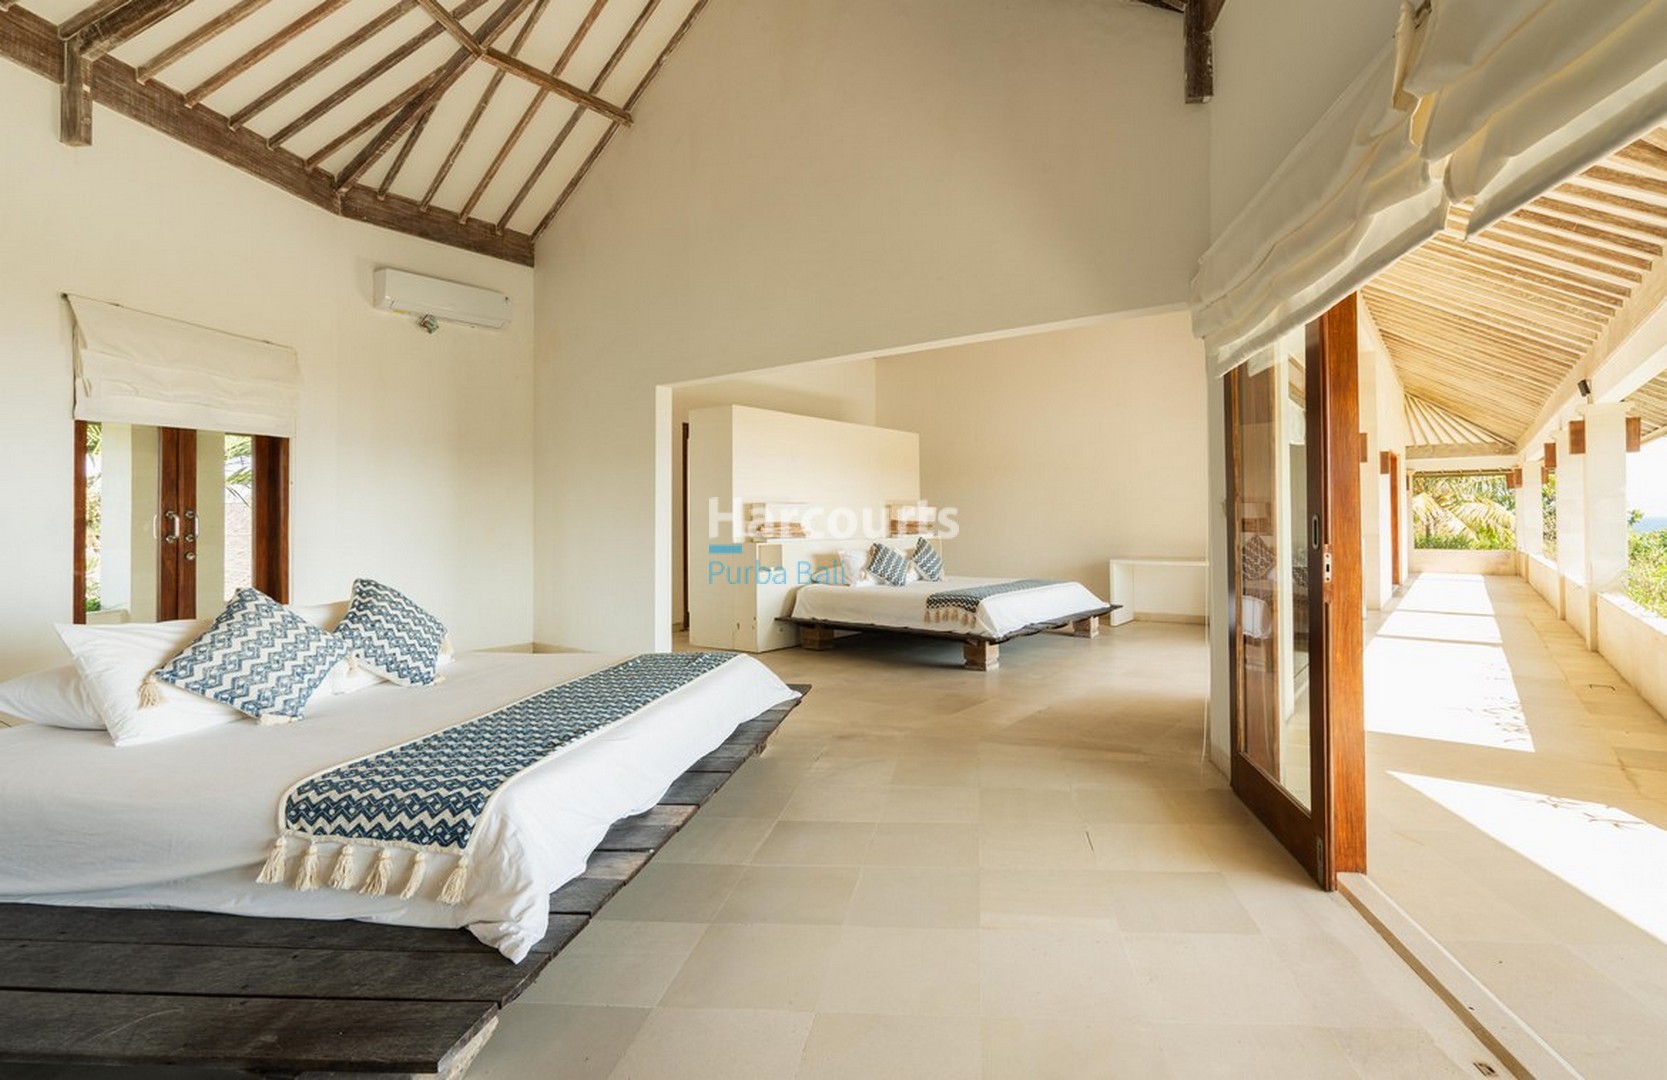 Massive 6-Bedroom Beachfront Villa in Beraban Bali for sale